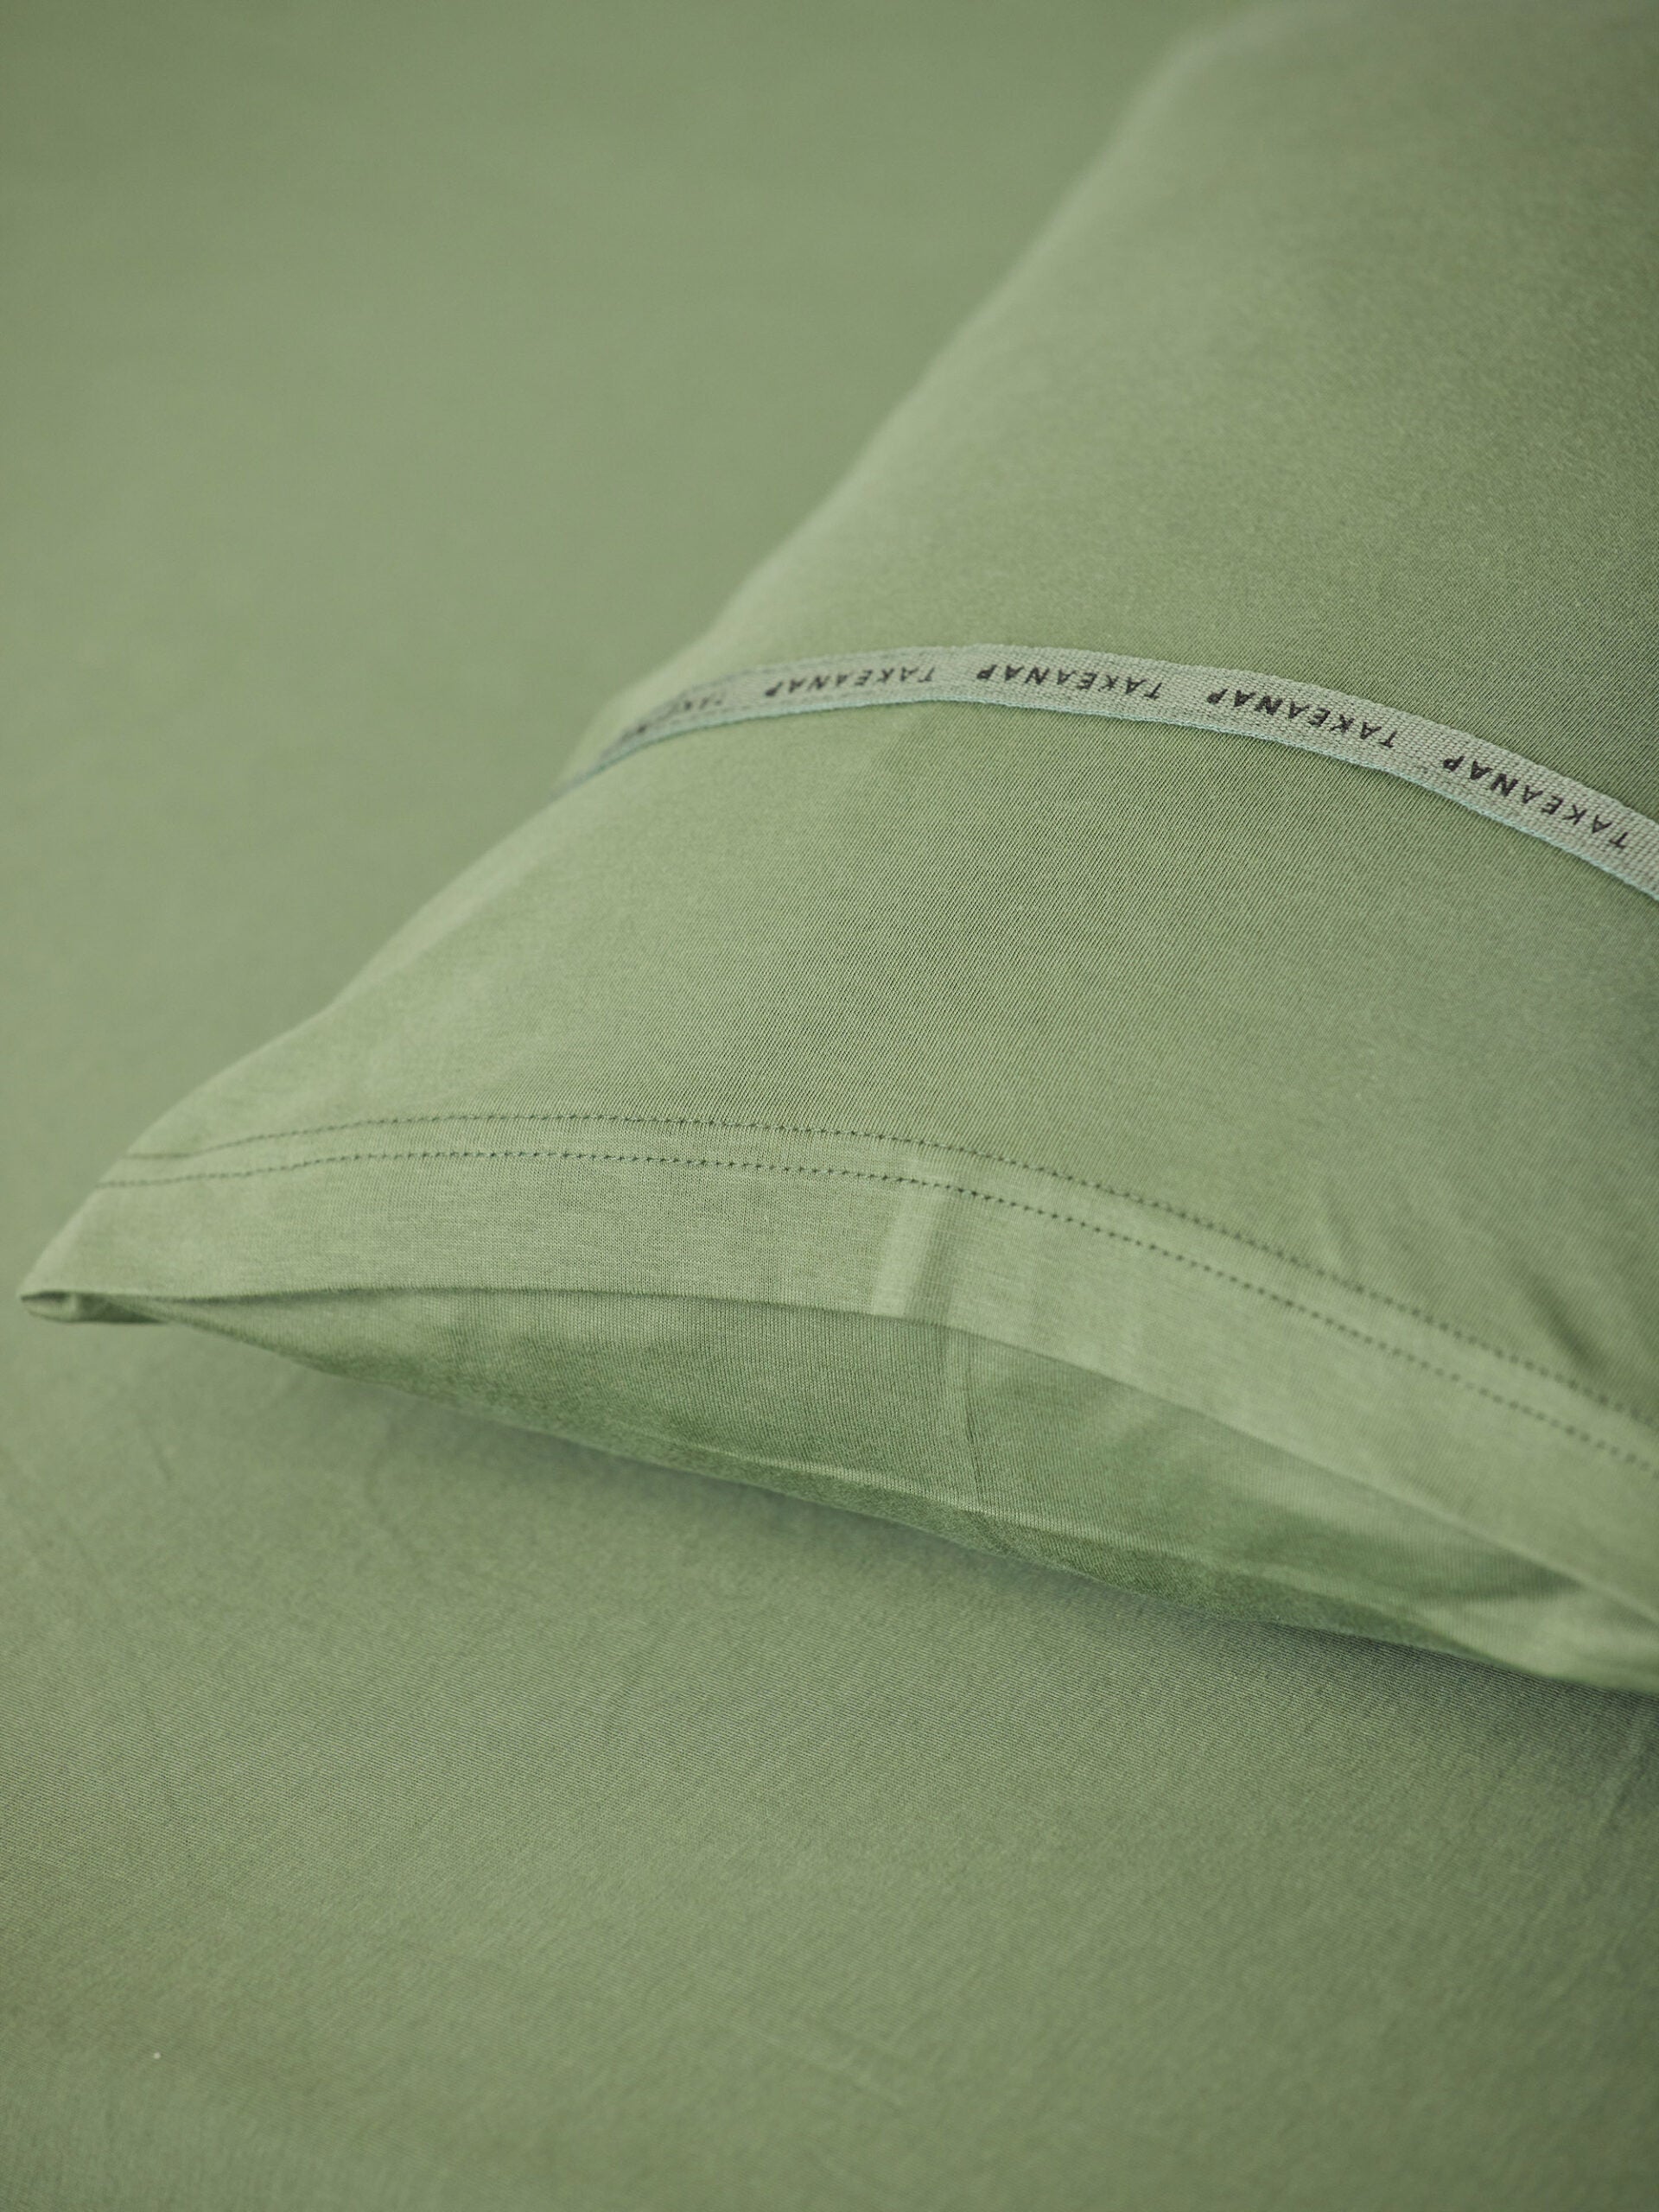 כרית עם ציפית על מיטת תינוק בצבע ירוק זית